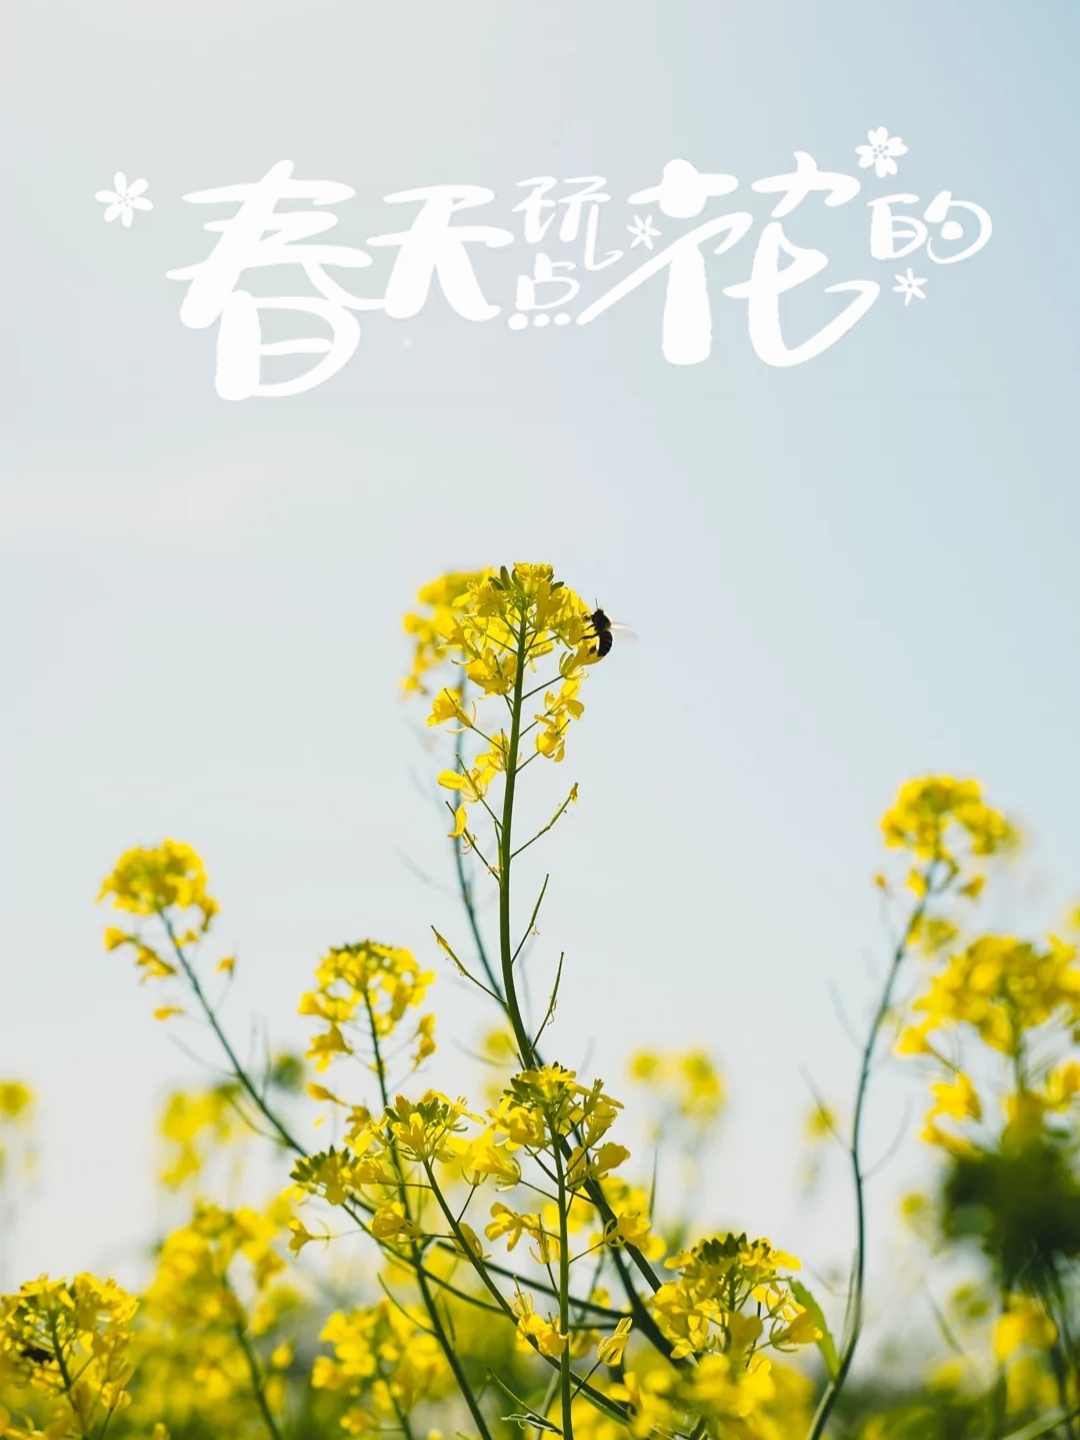 #春日赏花图鉴 武山滩歌油菜花是指在武山地区，油菜花盛开的美丽景象。油菜花是一种广泛种植的农作物，它